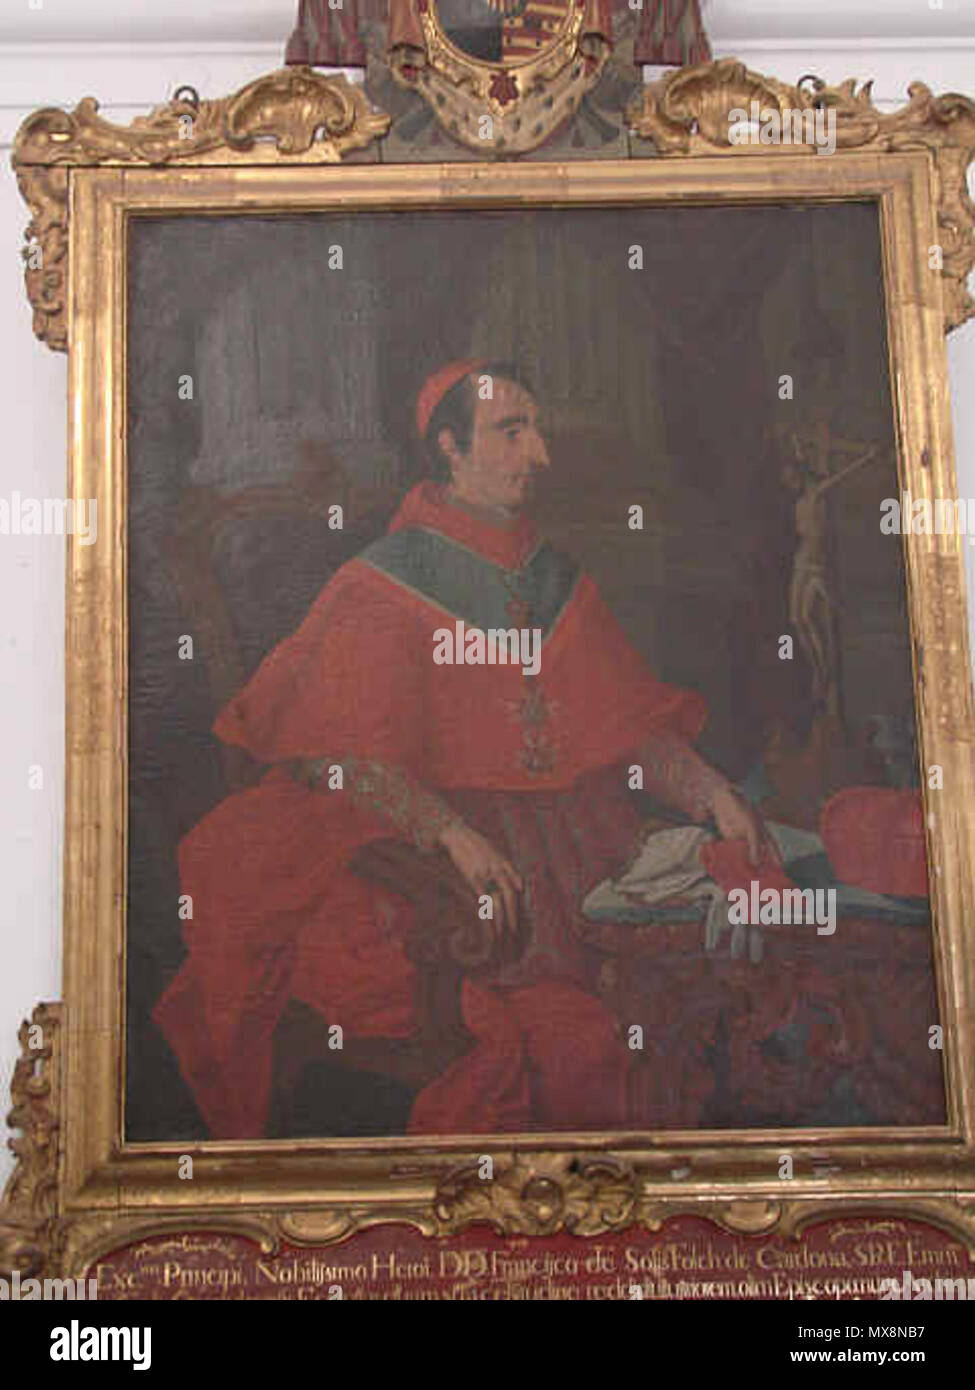 217 Francisco de Solís Folch y Cardona Stockfoto